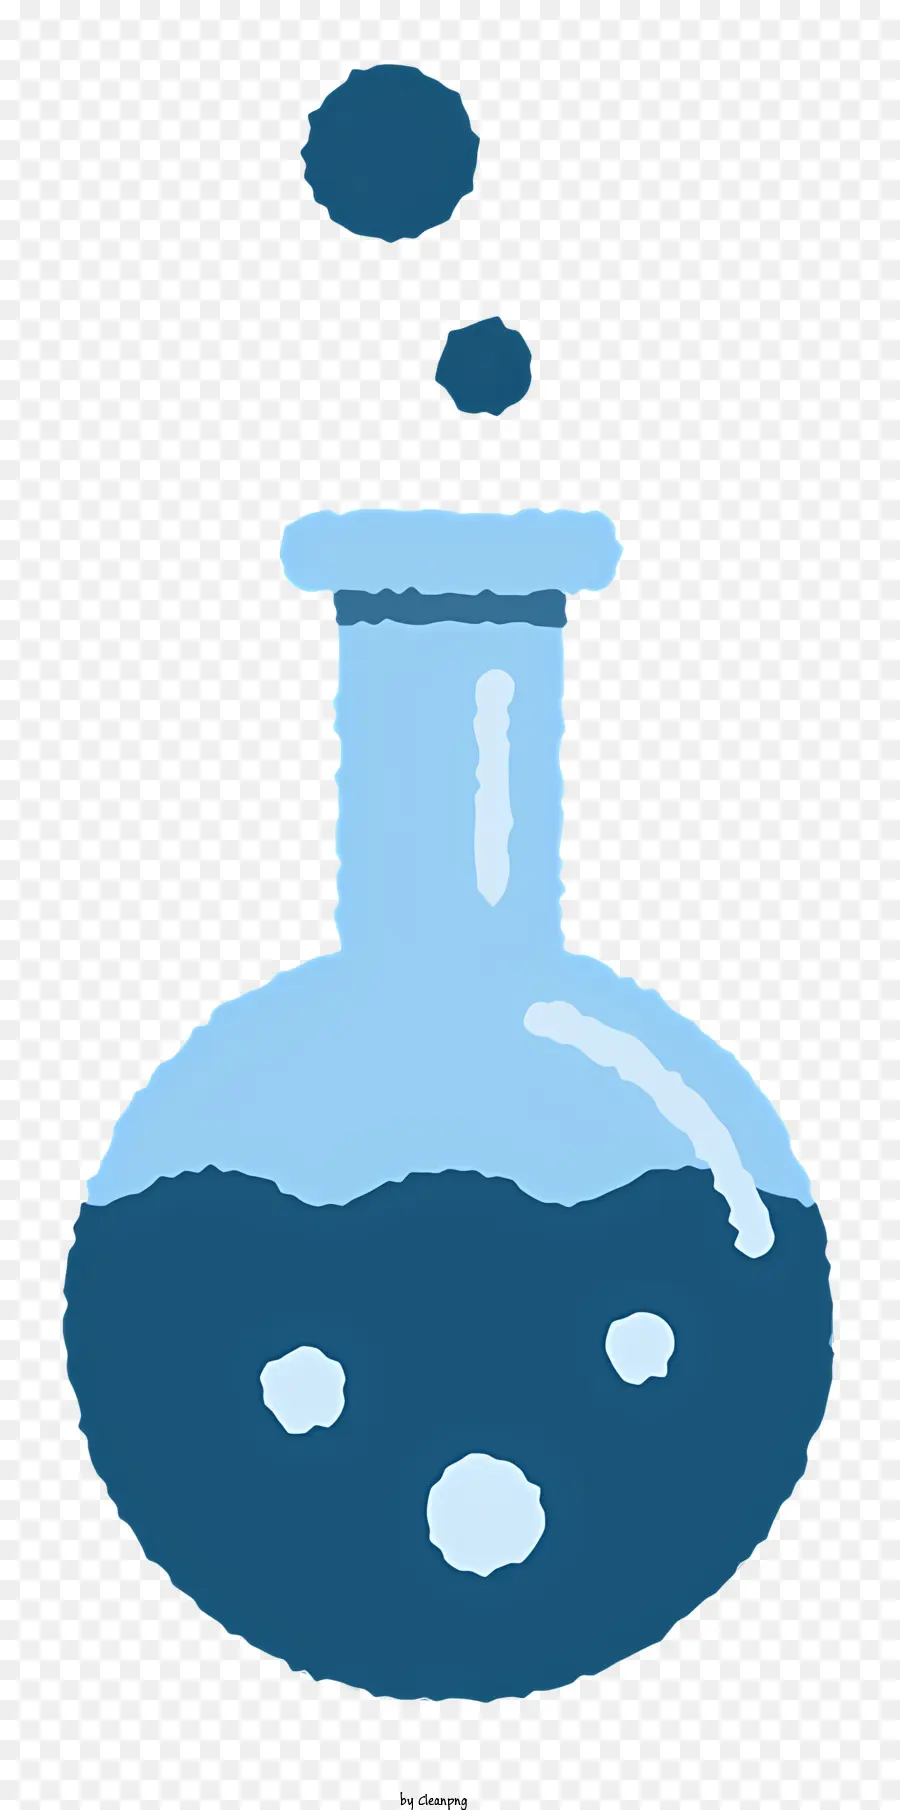 Thử nghiệm nền màu đen tràn chất lỏng màu xanh - Chất lỏng màu xanh đổ từ cốc trong suốt